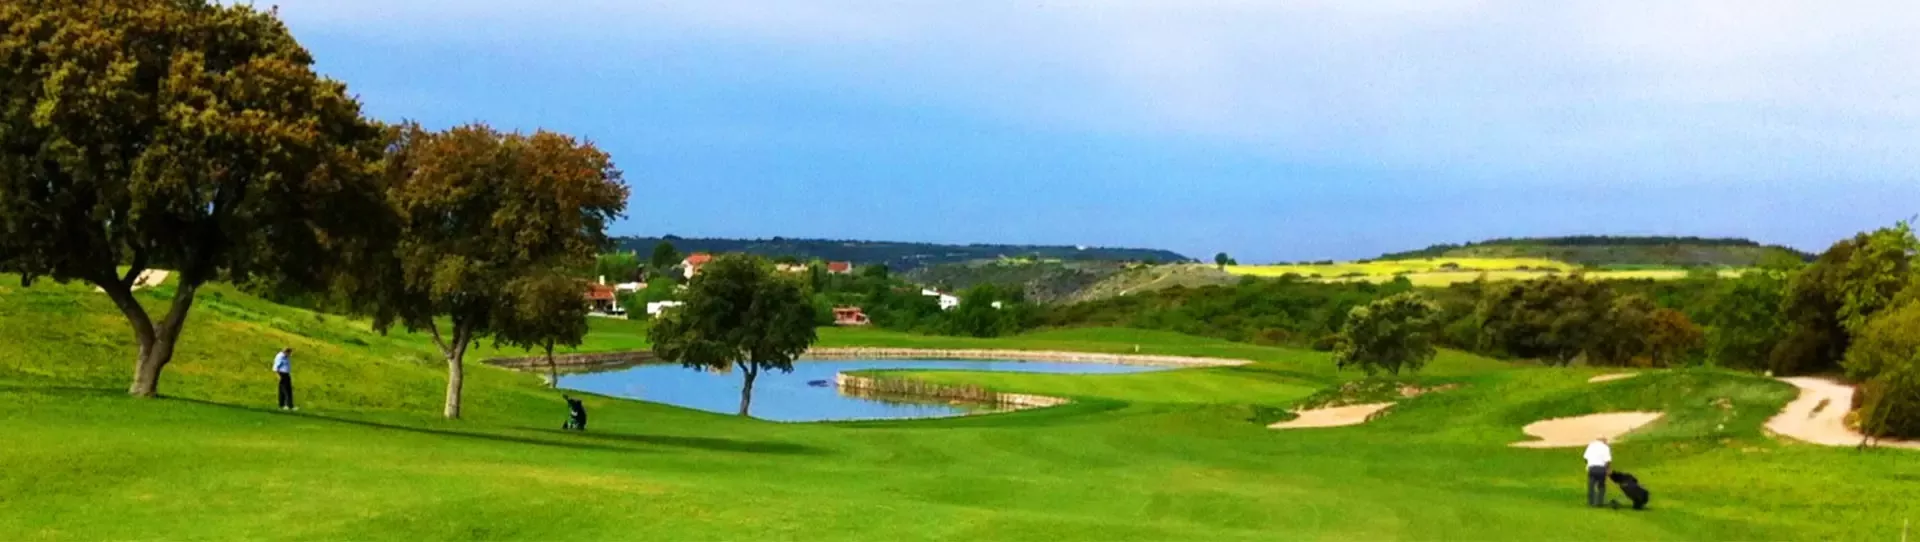 Spain golf courses - El Robledal Golf Course - Photo 1